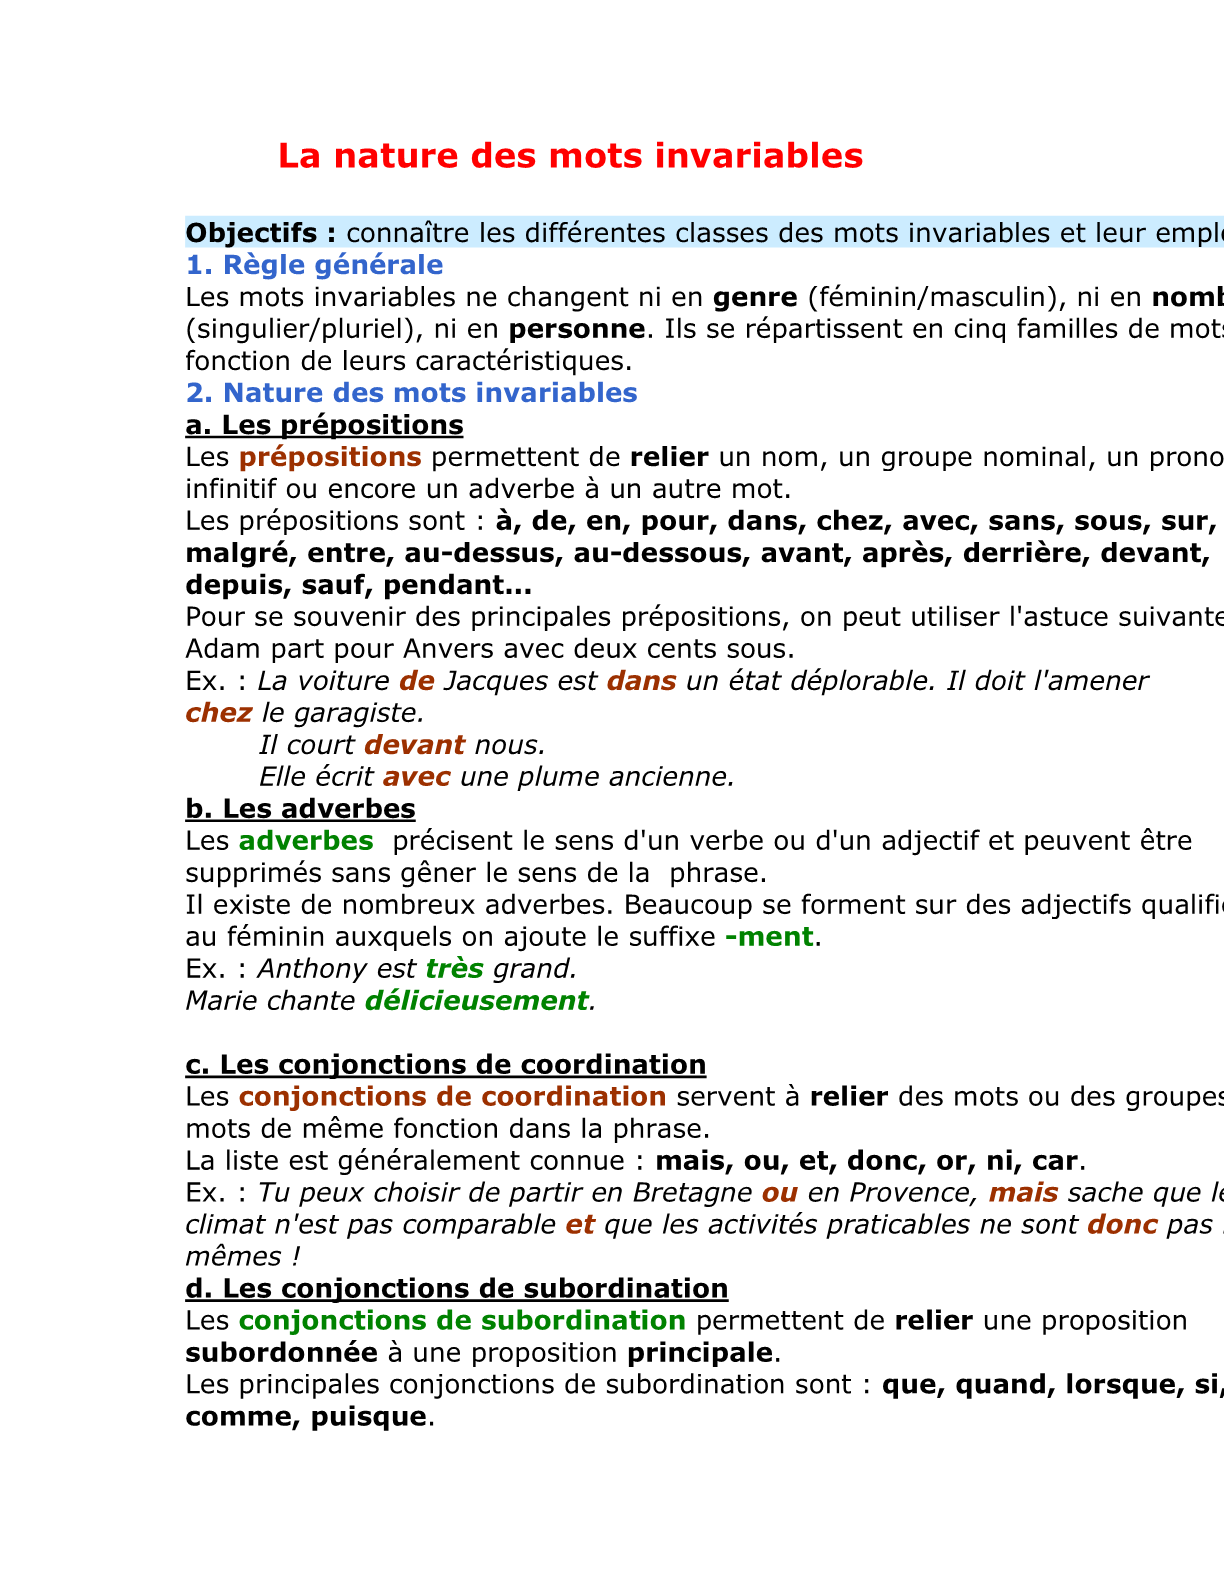 درس La nature des mots variables للسنة الأولى إعدادي